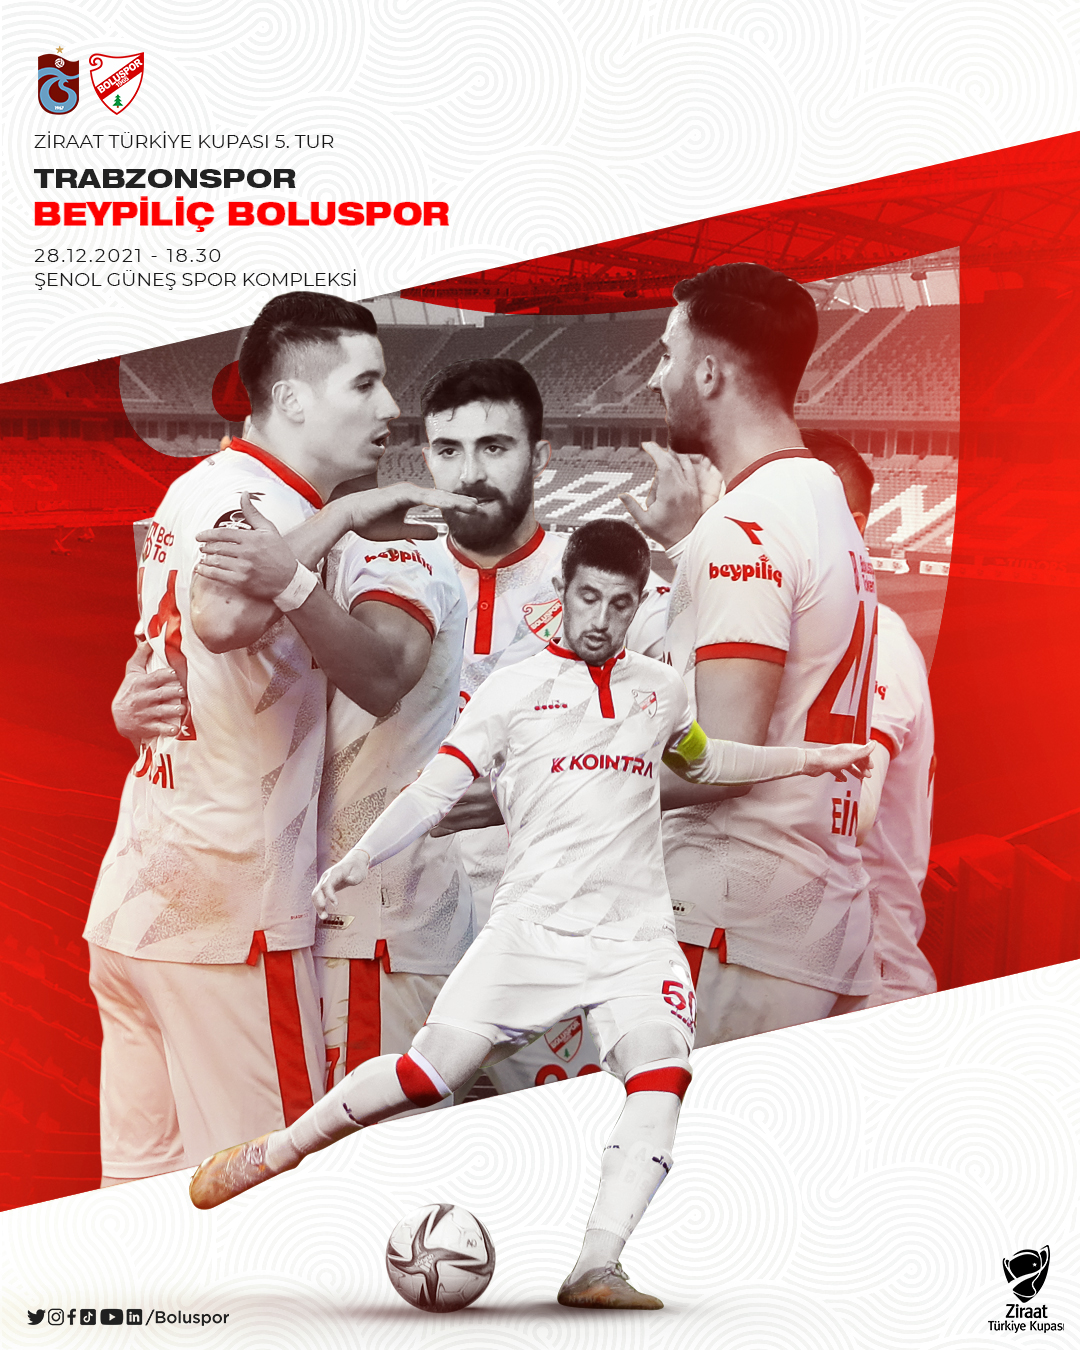 Boluspor'un Trabzonspor Maçına Özel Hazırladığı Maç Görseli